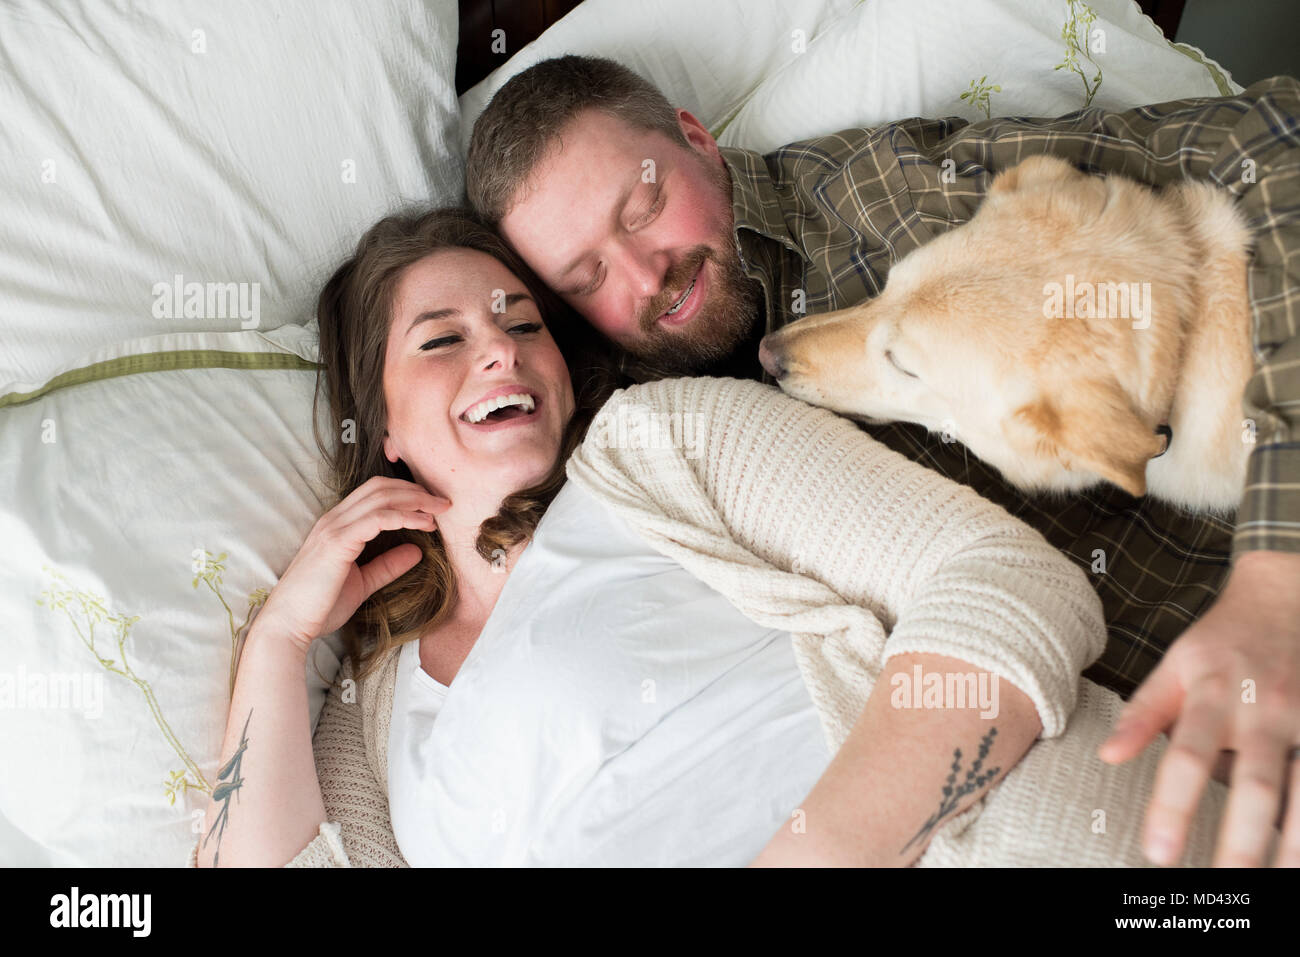 Mujer embarazada acostado en la cama con la pareja, perro tumbado en la cama junto a ellos, vista elevada Foto de stock